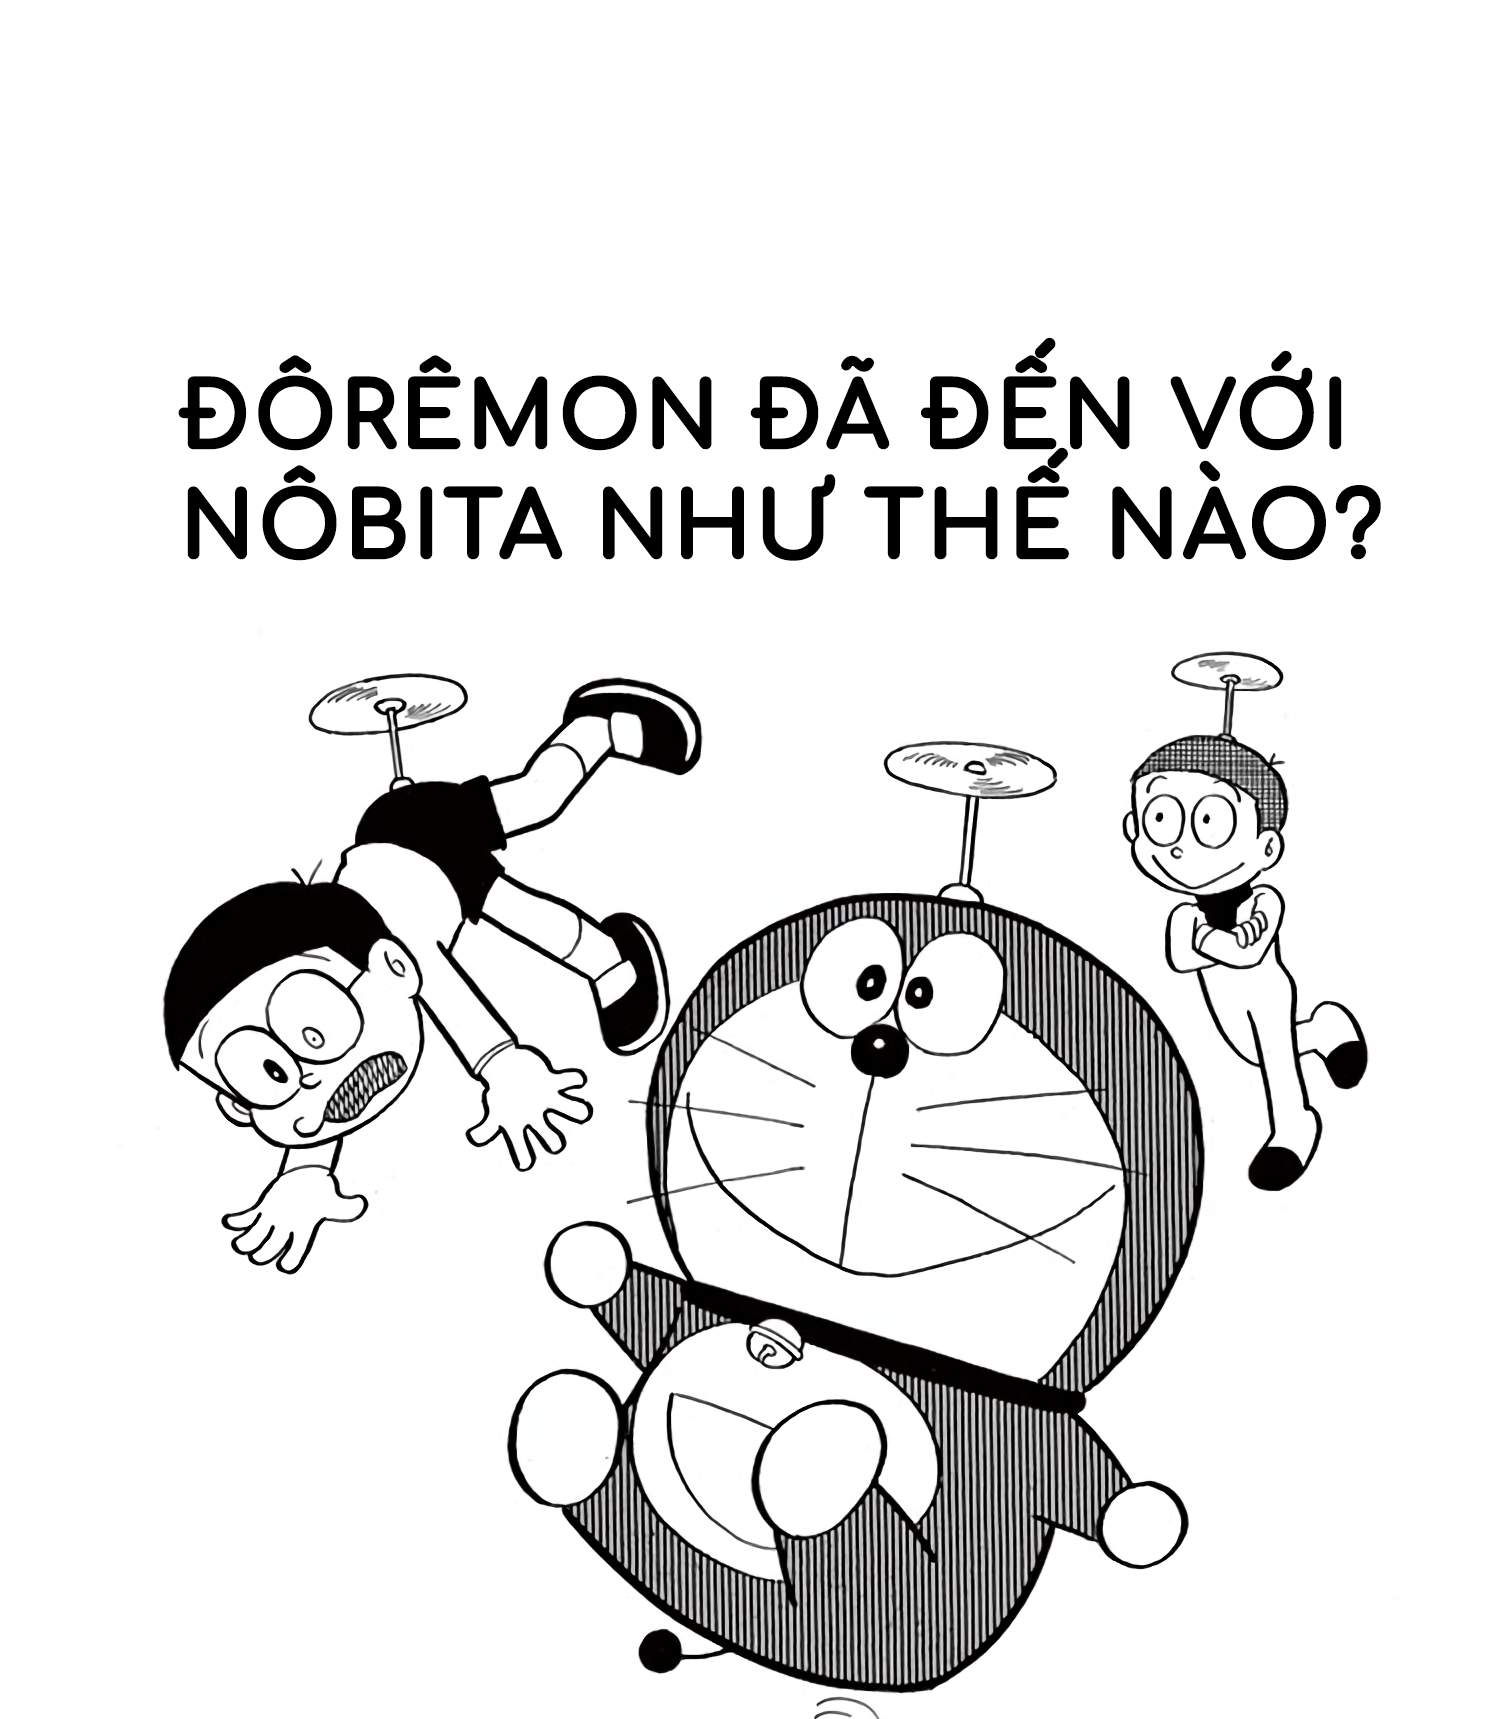 Bạn muốn tìm hiểu thêm về thế giới của Doremon? Hãy truy cập vào Wikia Doraemon tiếng Việt! Tại đây, bạn sẽ tìm thấy những thông tin chi tiết nhất về các nhân vật trong bộ phim, cốt truyện hấp dẫn và rất nhiều thông tin thú vị khác.